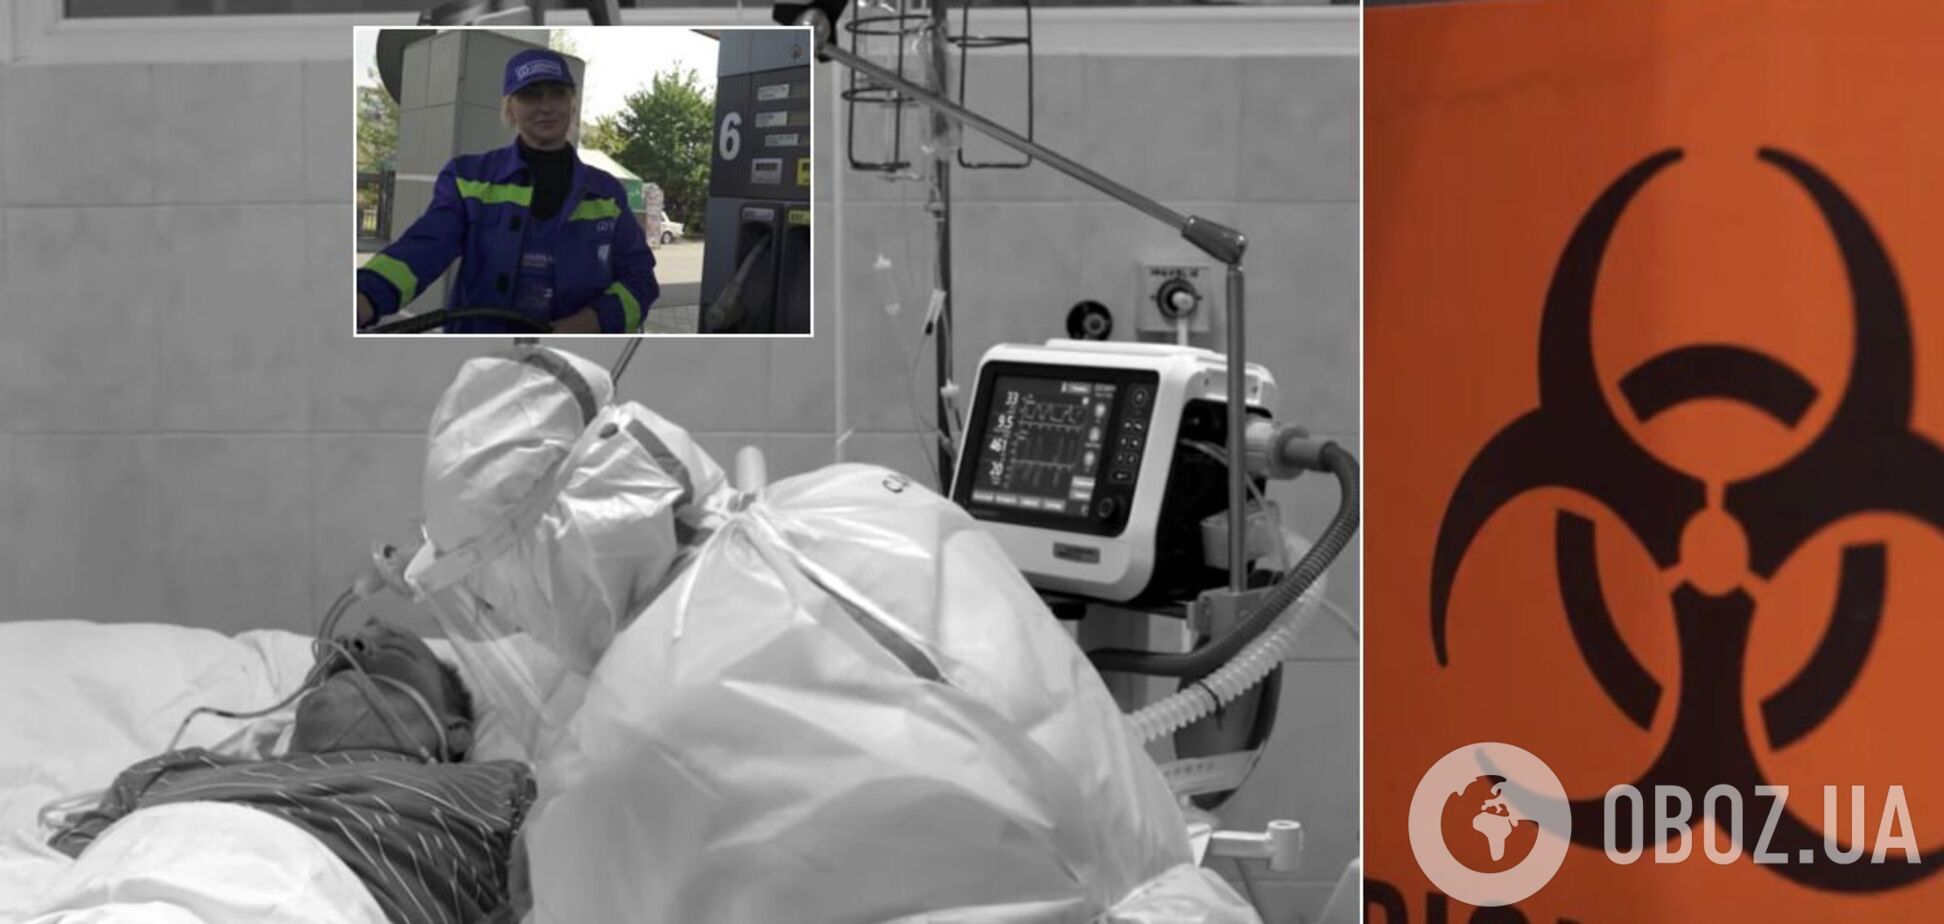 Медсестра влаштувалася на заправку, медик помер без ліків: правдиві історії про COVID-19 у фільмі Бно-Айріяна